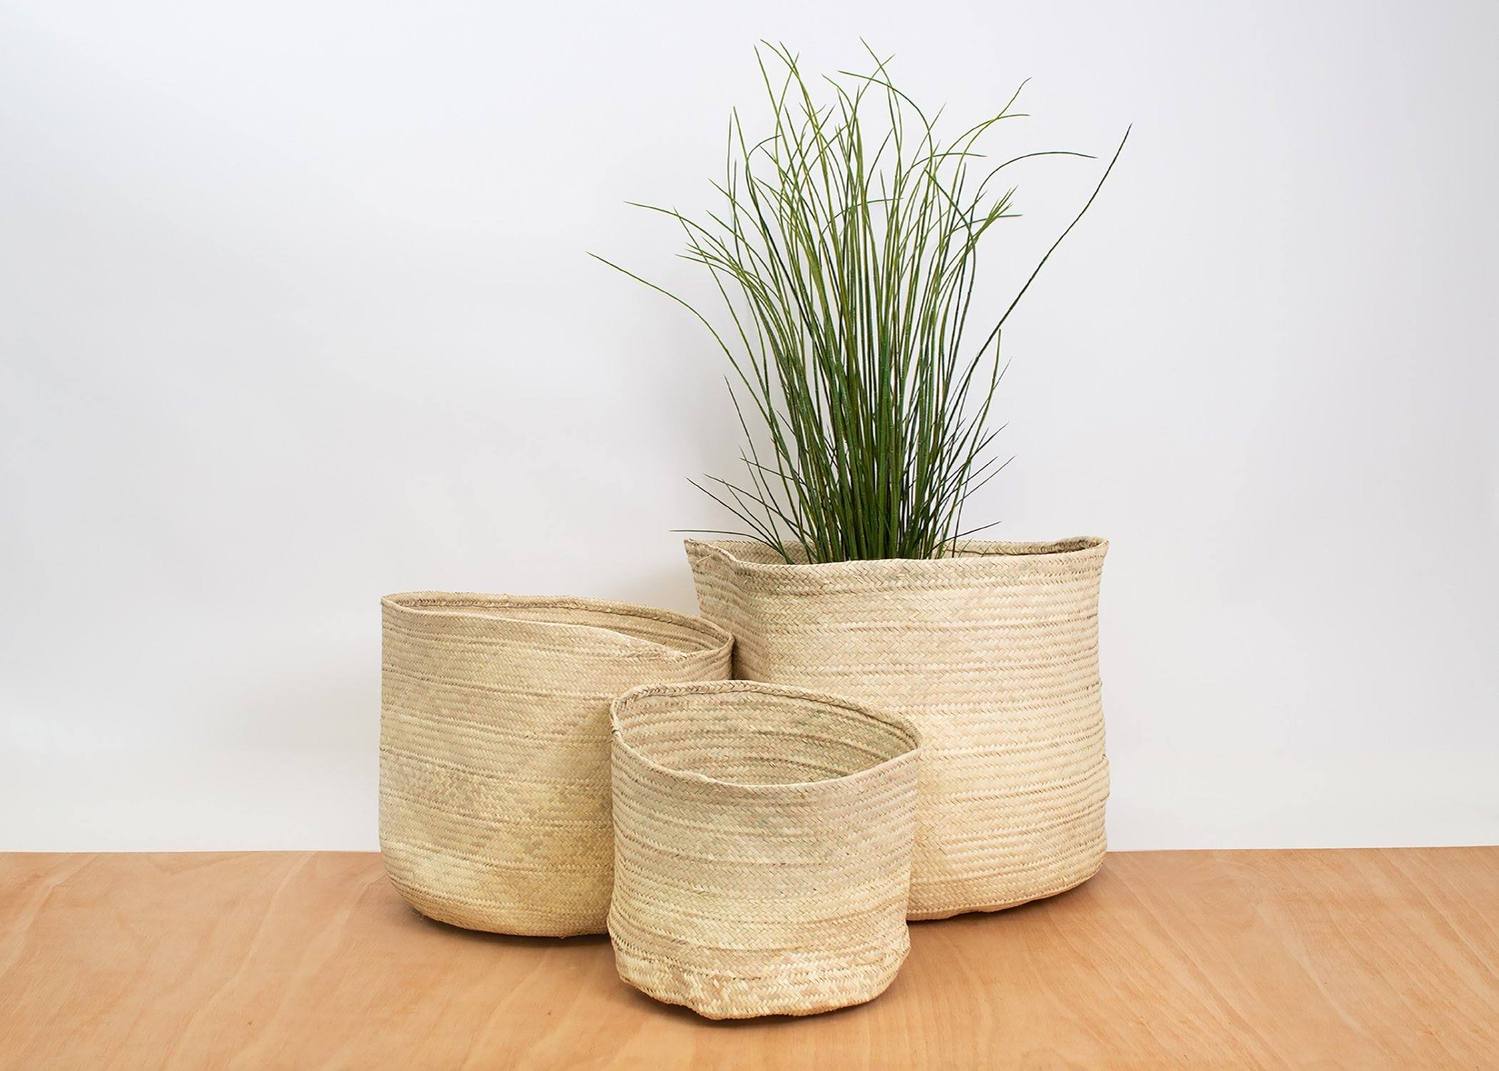 Ethical Gift Idea: Kazi palm nesting baskets